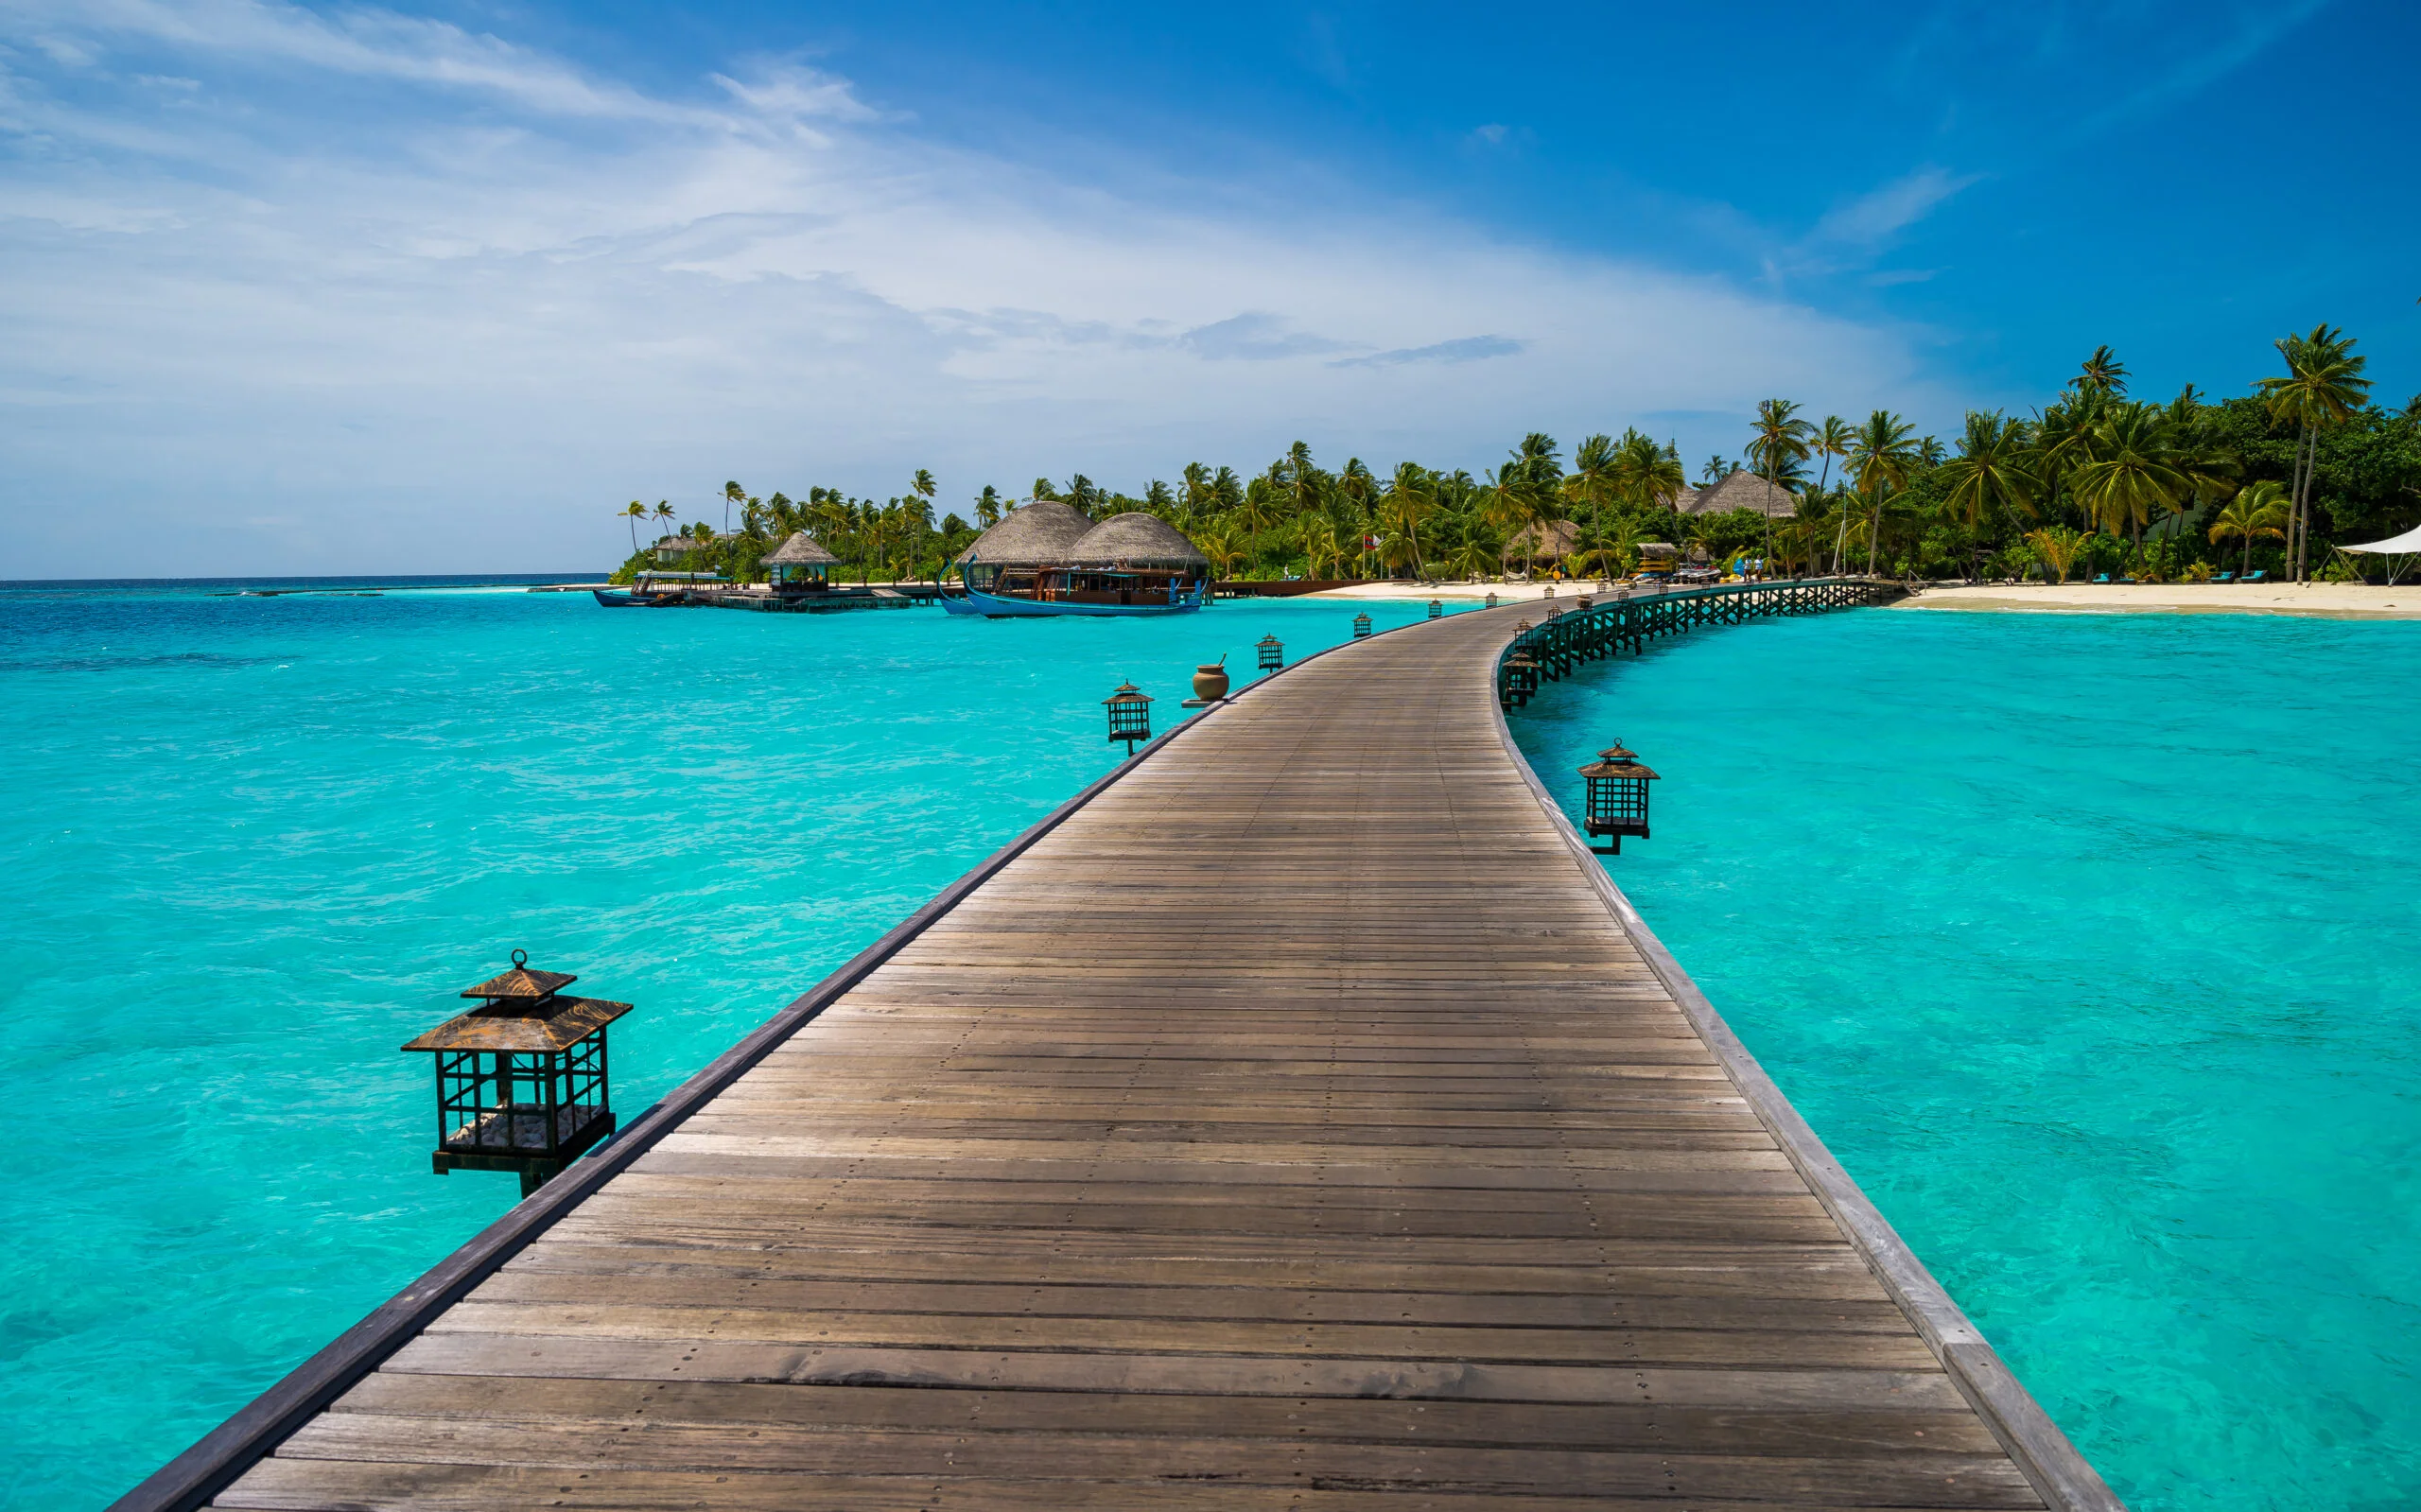 Constance Halaveli Resort & Spa, The Maldives - Photo by Mac Qin at Flickr